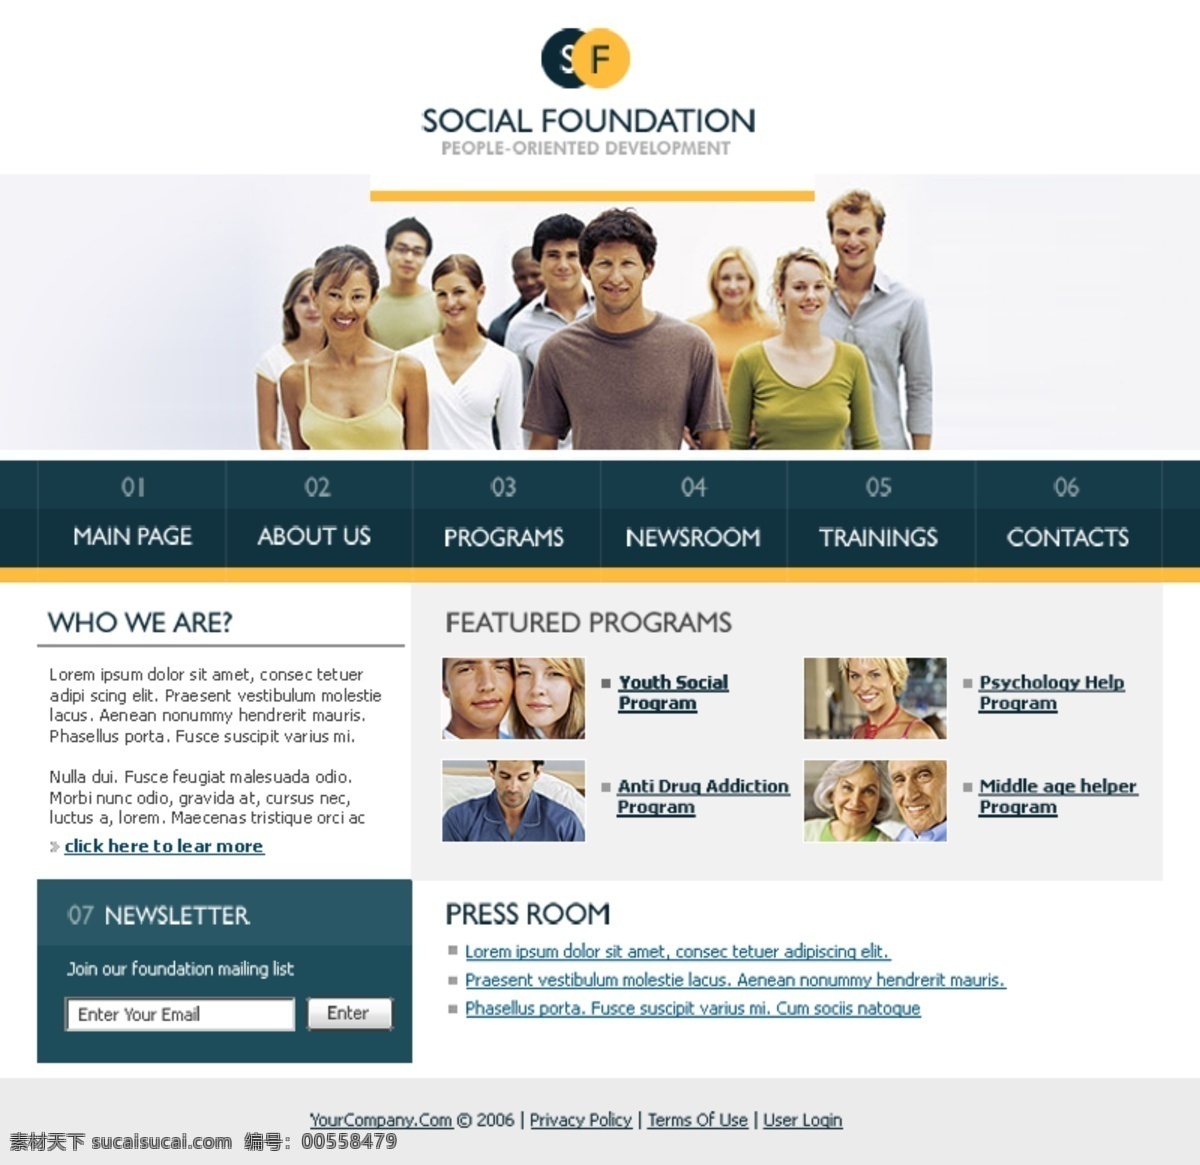 欧美 社会 公益 网站 sf免费下载 social foundation 欧美社会 peopleoriented development 网页素材 网页模板